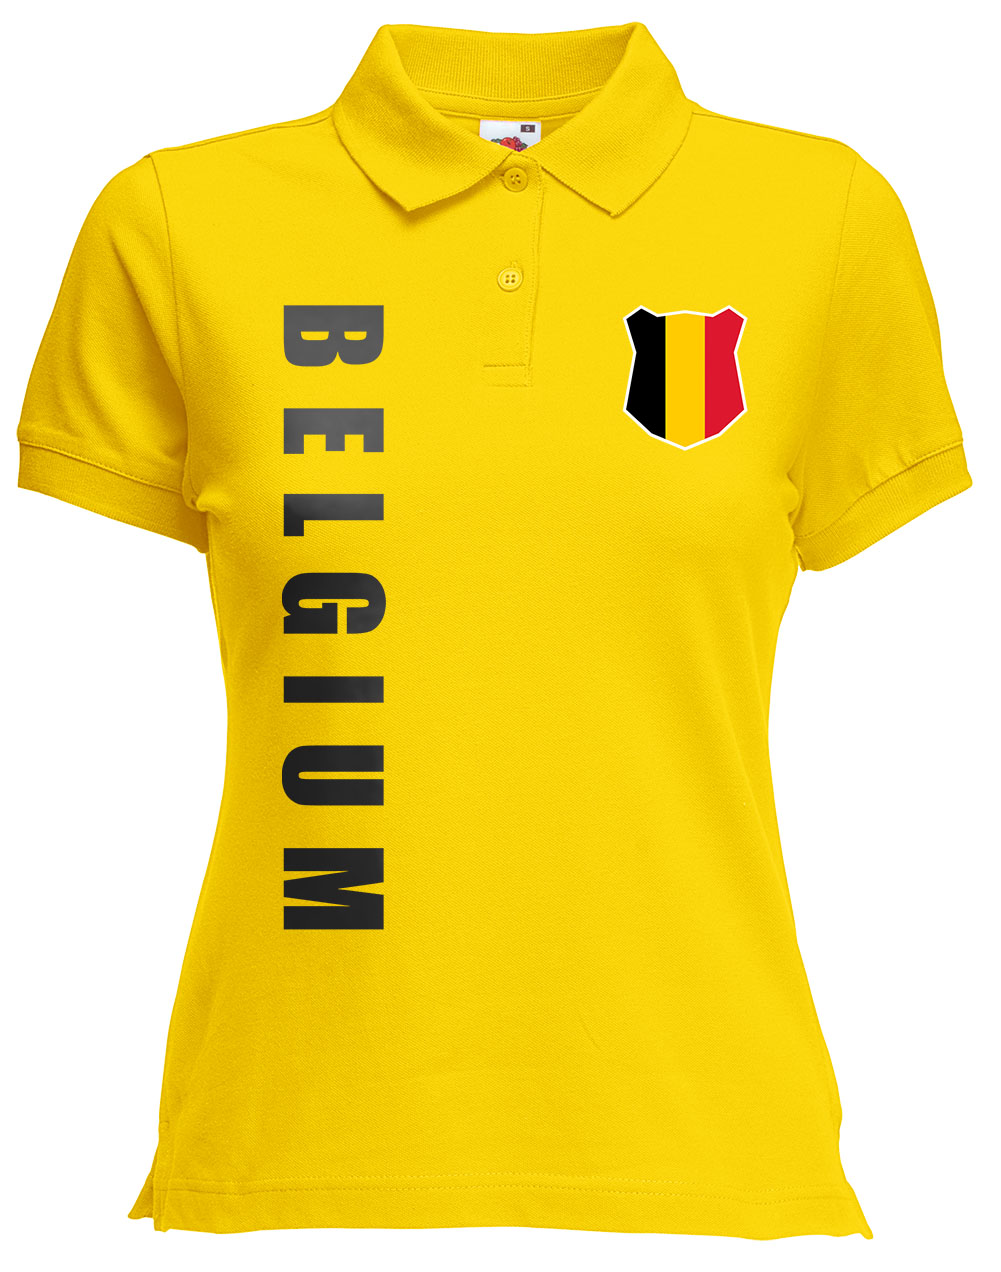 Matchdetail 2018 away für Trikot Belgien for shirt jersey Belgium 